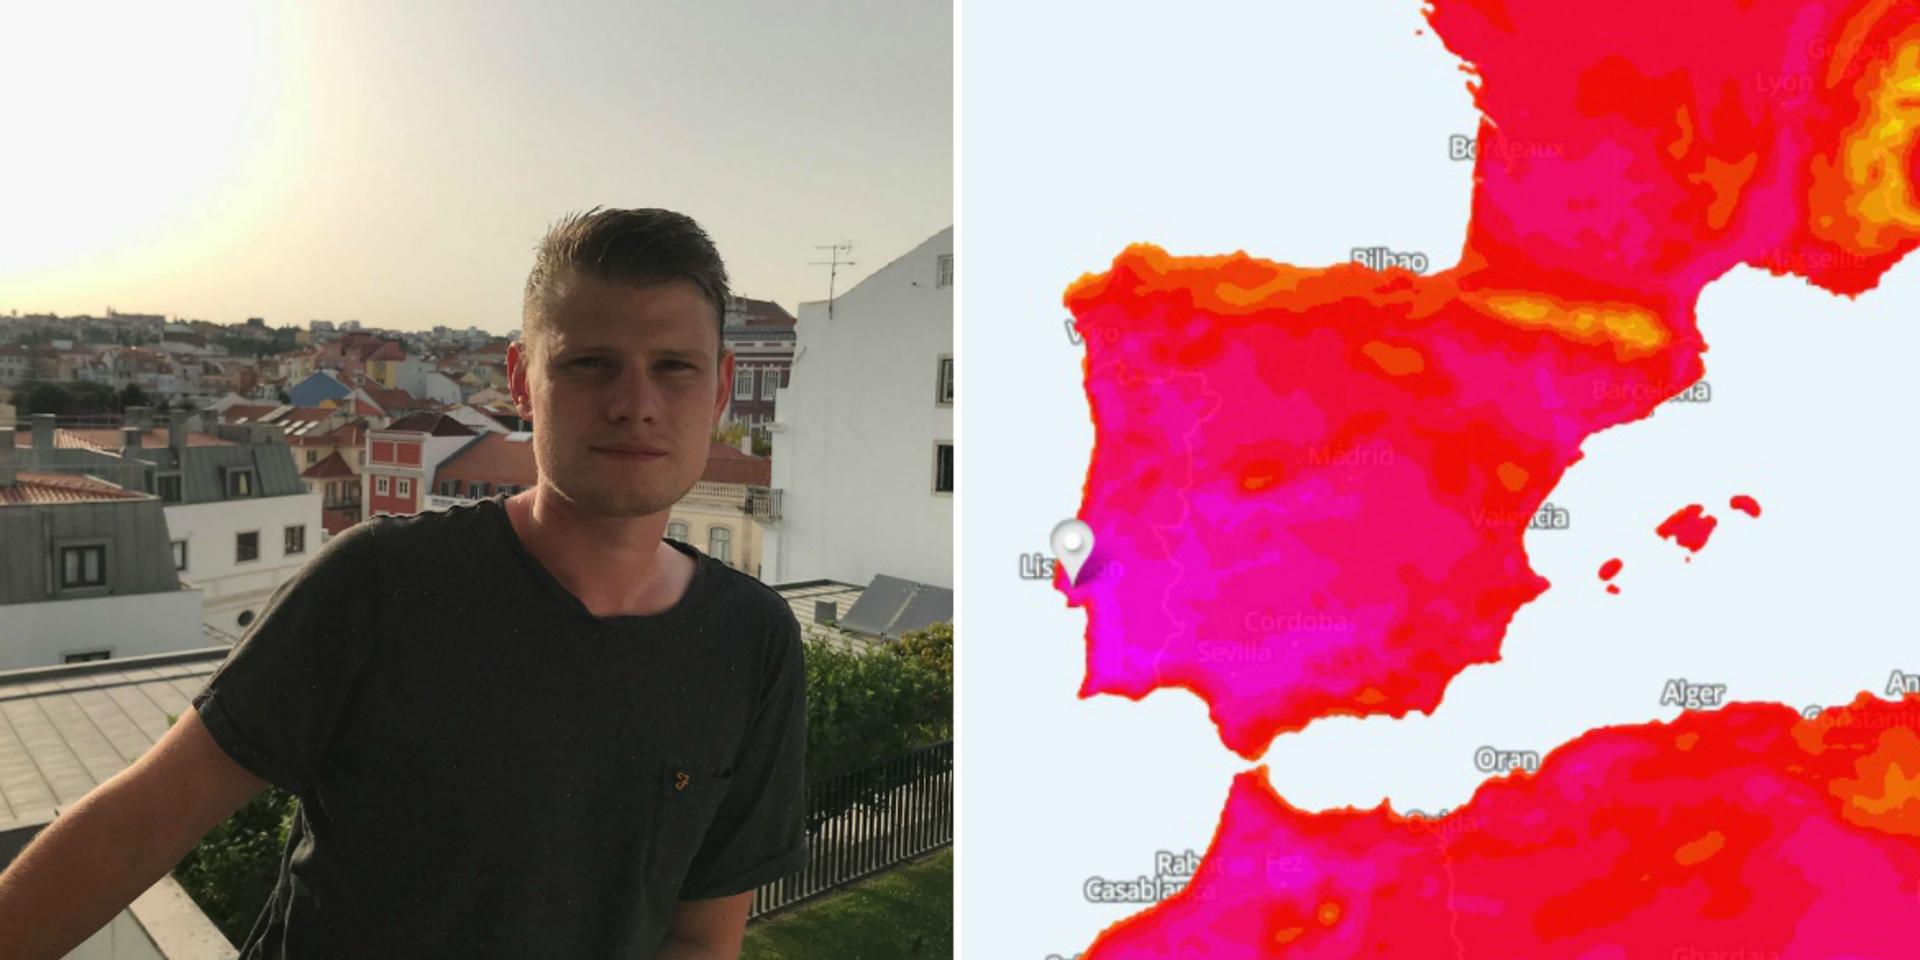 Filip Perem i Lissabon där det i helgen ska bli monstervarmt. I de rosa partierna på väderkartan ska det blir över 45 grader under lördagseftermiddagen, Lissabon vid den vita markören.